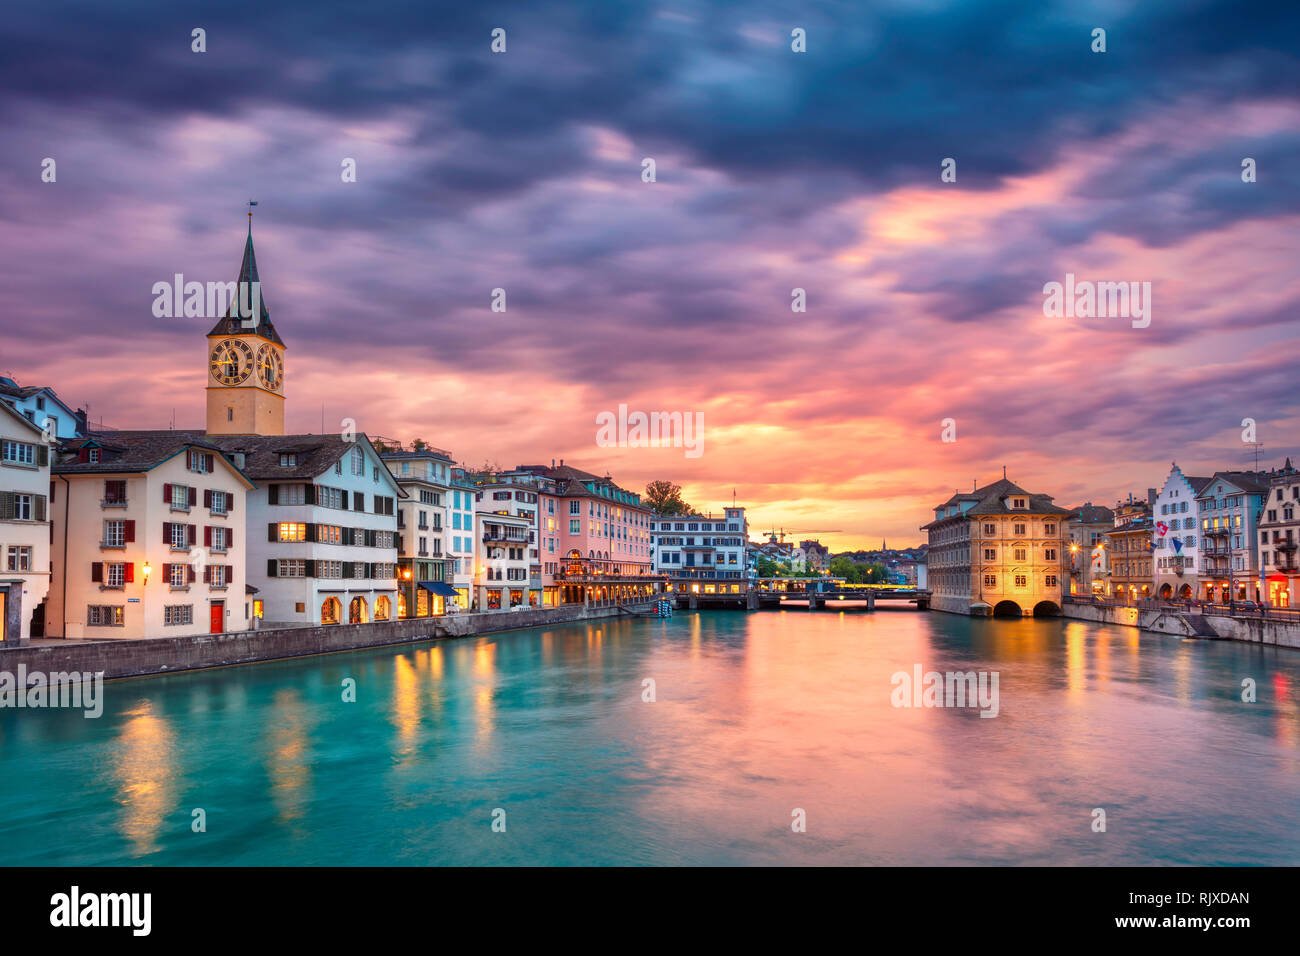 Zurigo. Cityscape immagine di Zurigo, Svizzera durante il tramonto spettacolare Foto Stock